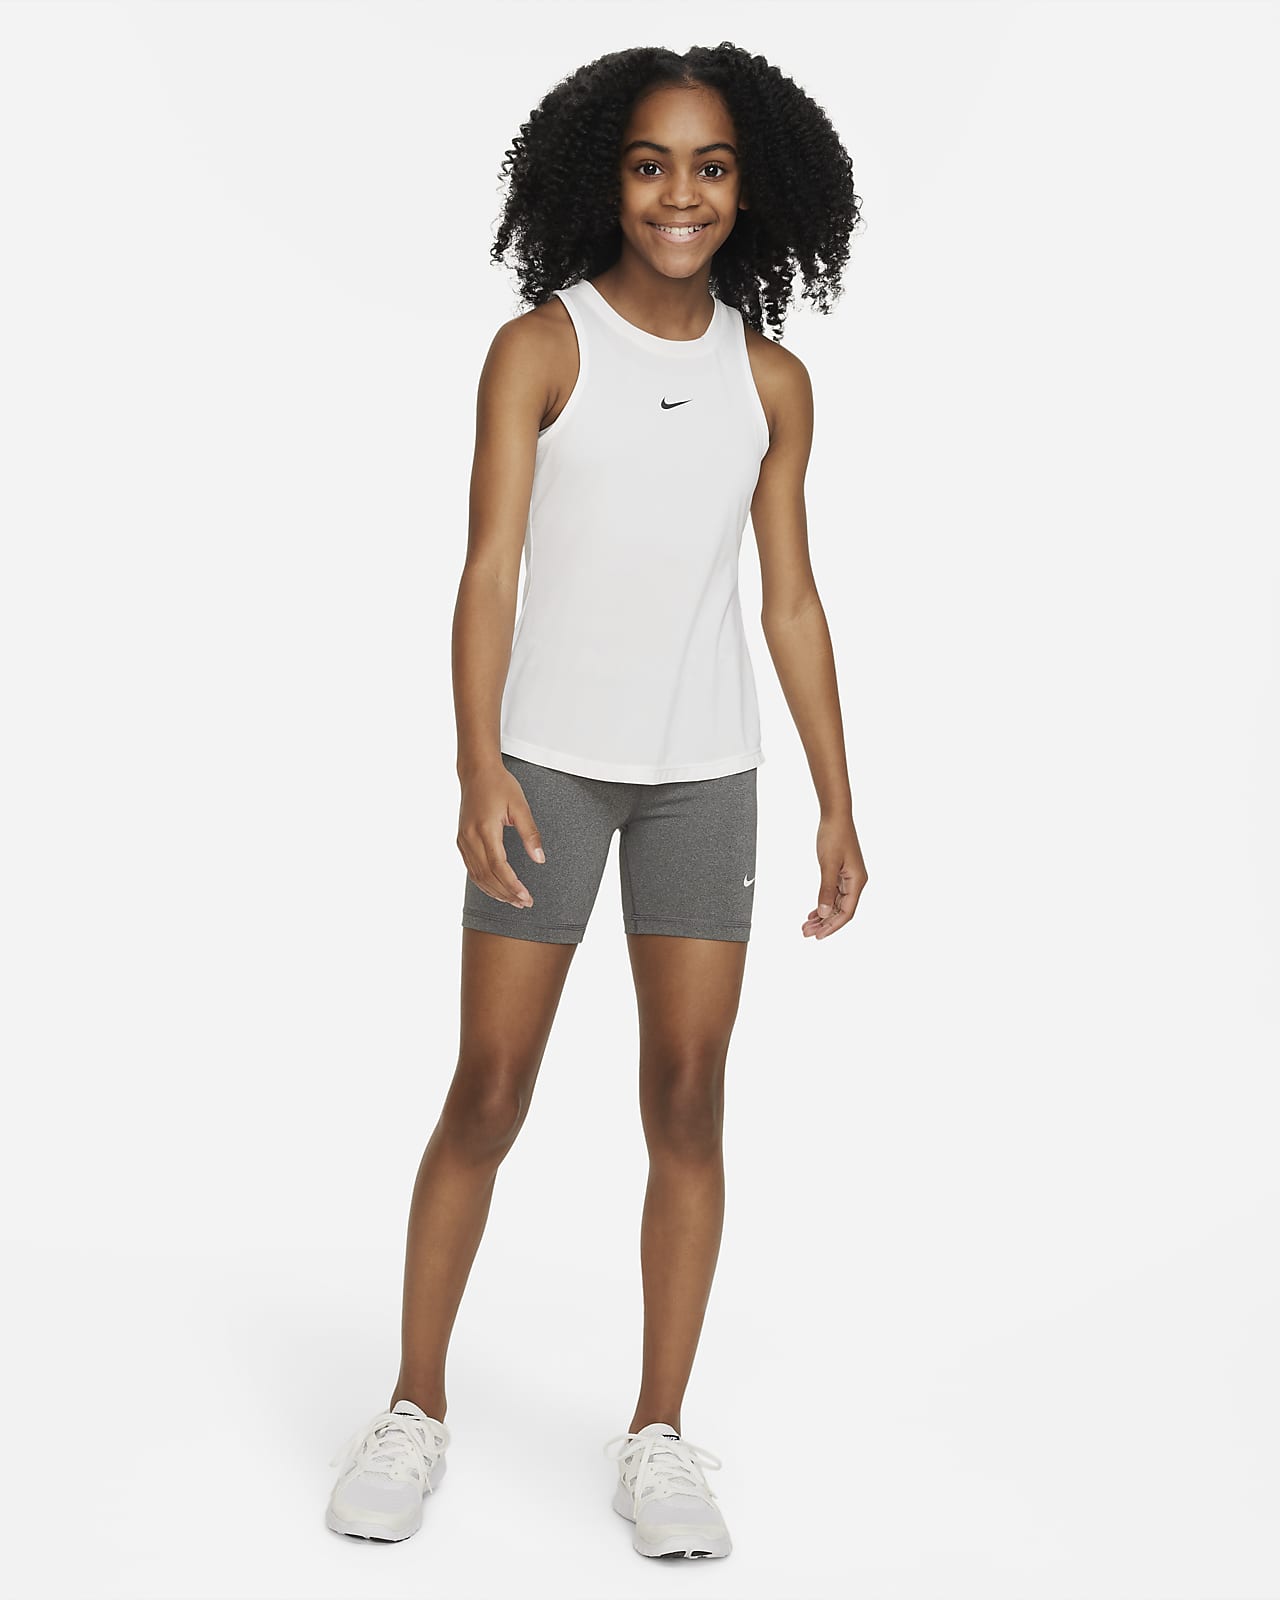 Nike Pro Older Kids' (Girls') Shorts. Nike PH